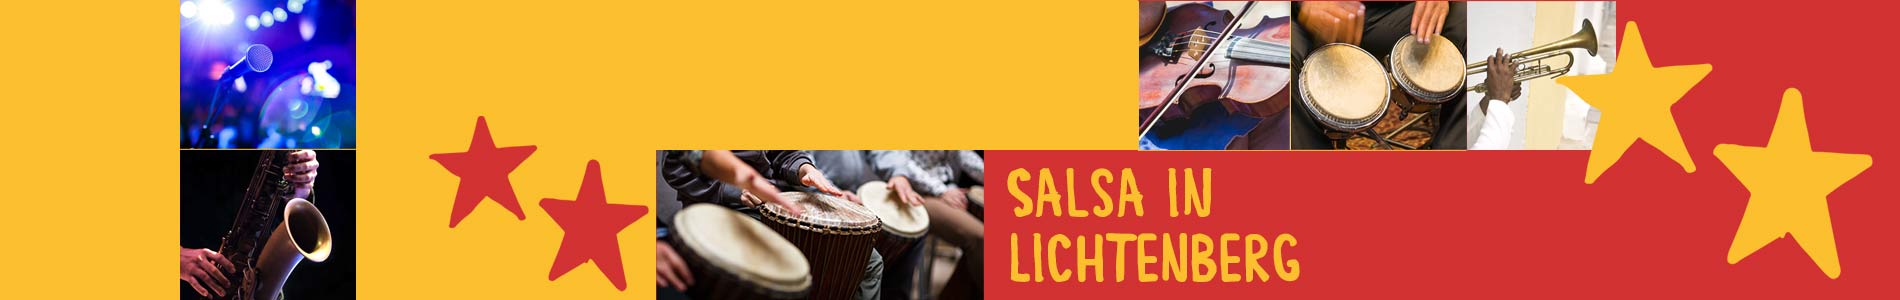 Salsa in Lichtenberg – Salsa lernen und tanzen, Tanzkurse, Partys, Veranstaltungen